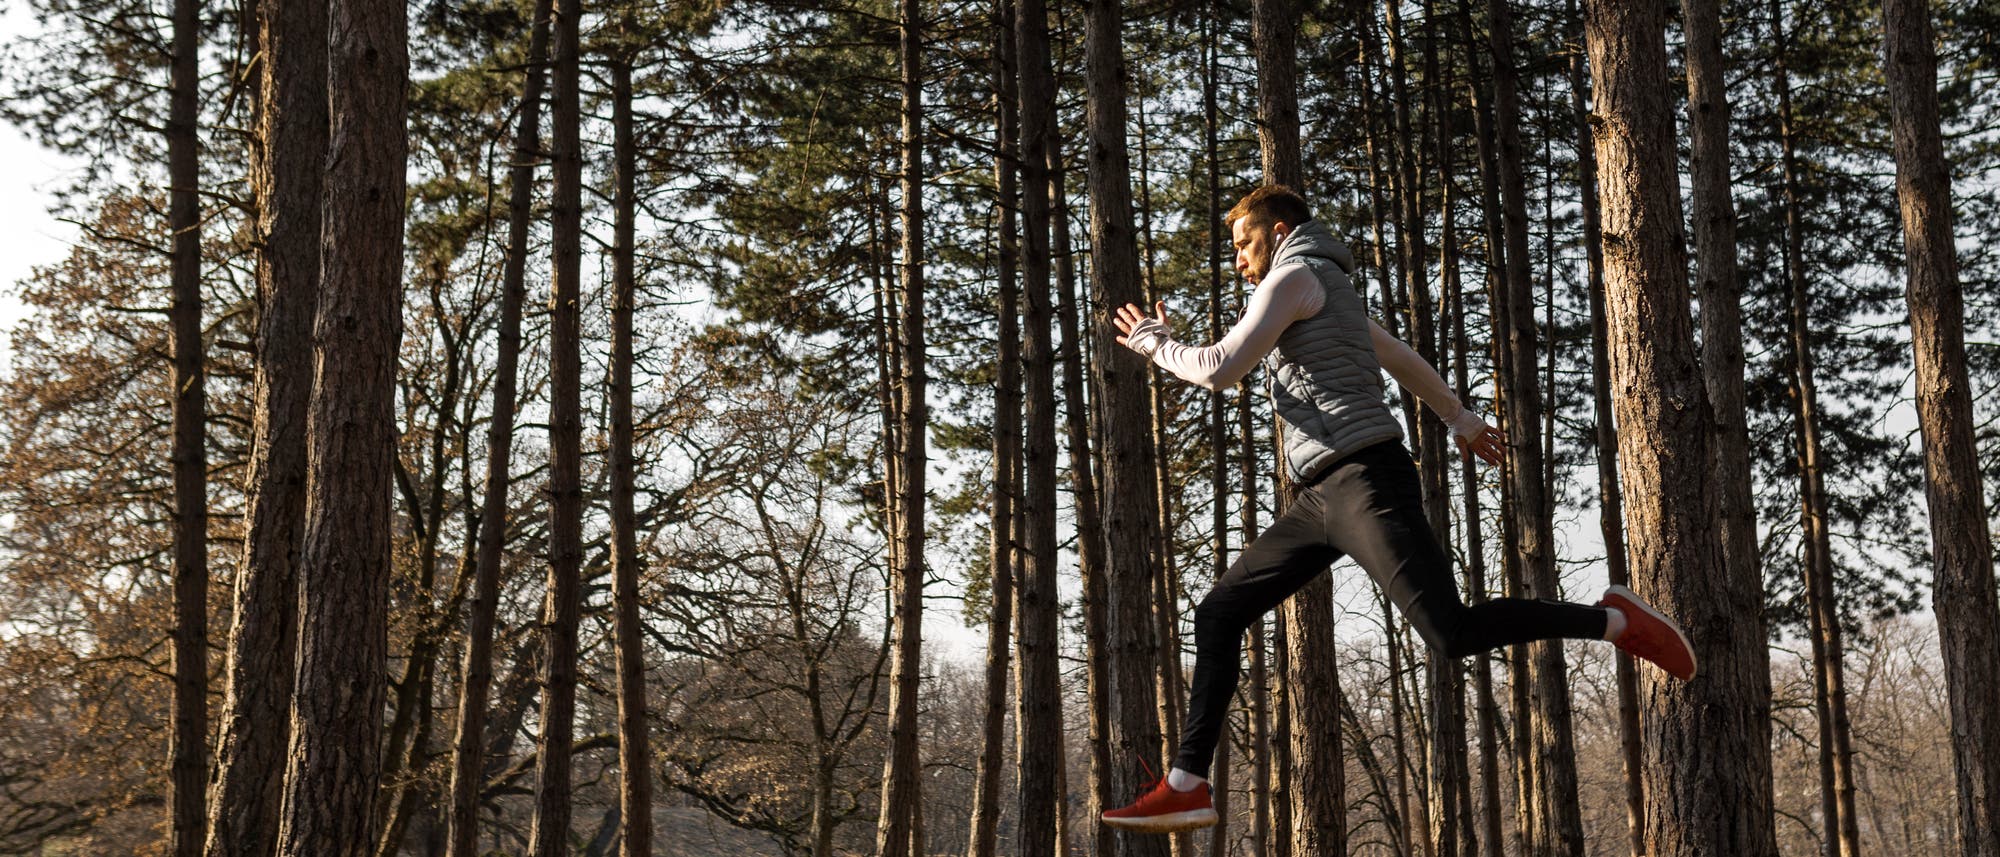 Ein Mann joggt im Wald und federt dabei sehr mit den Füßen ab, so dass er vom Boden abhebt